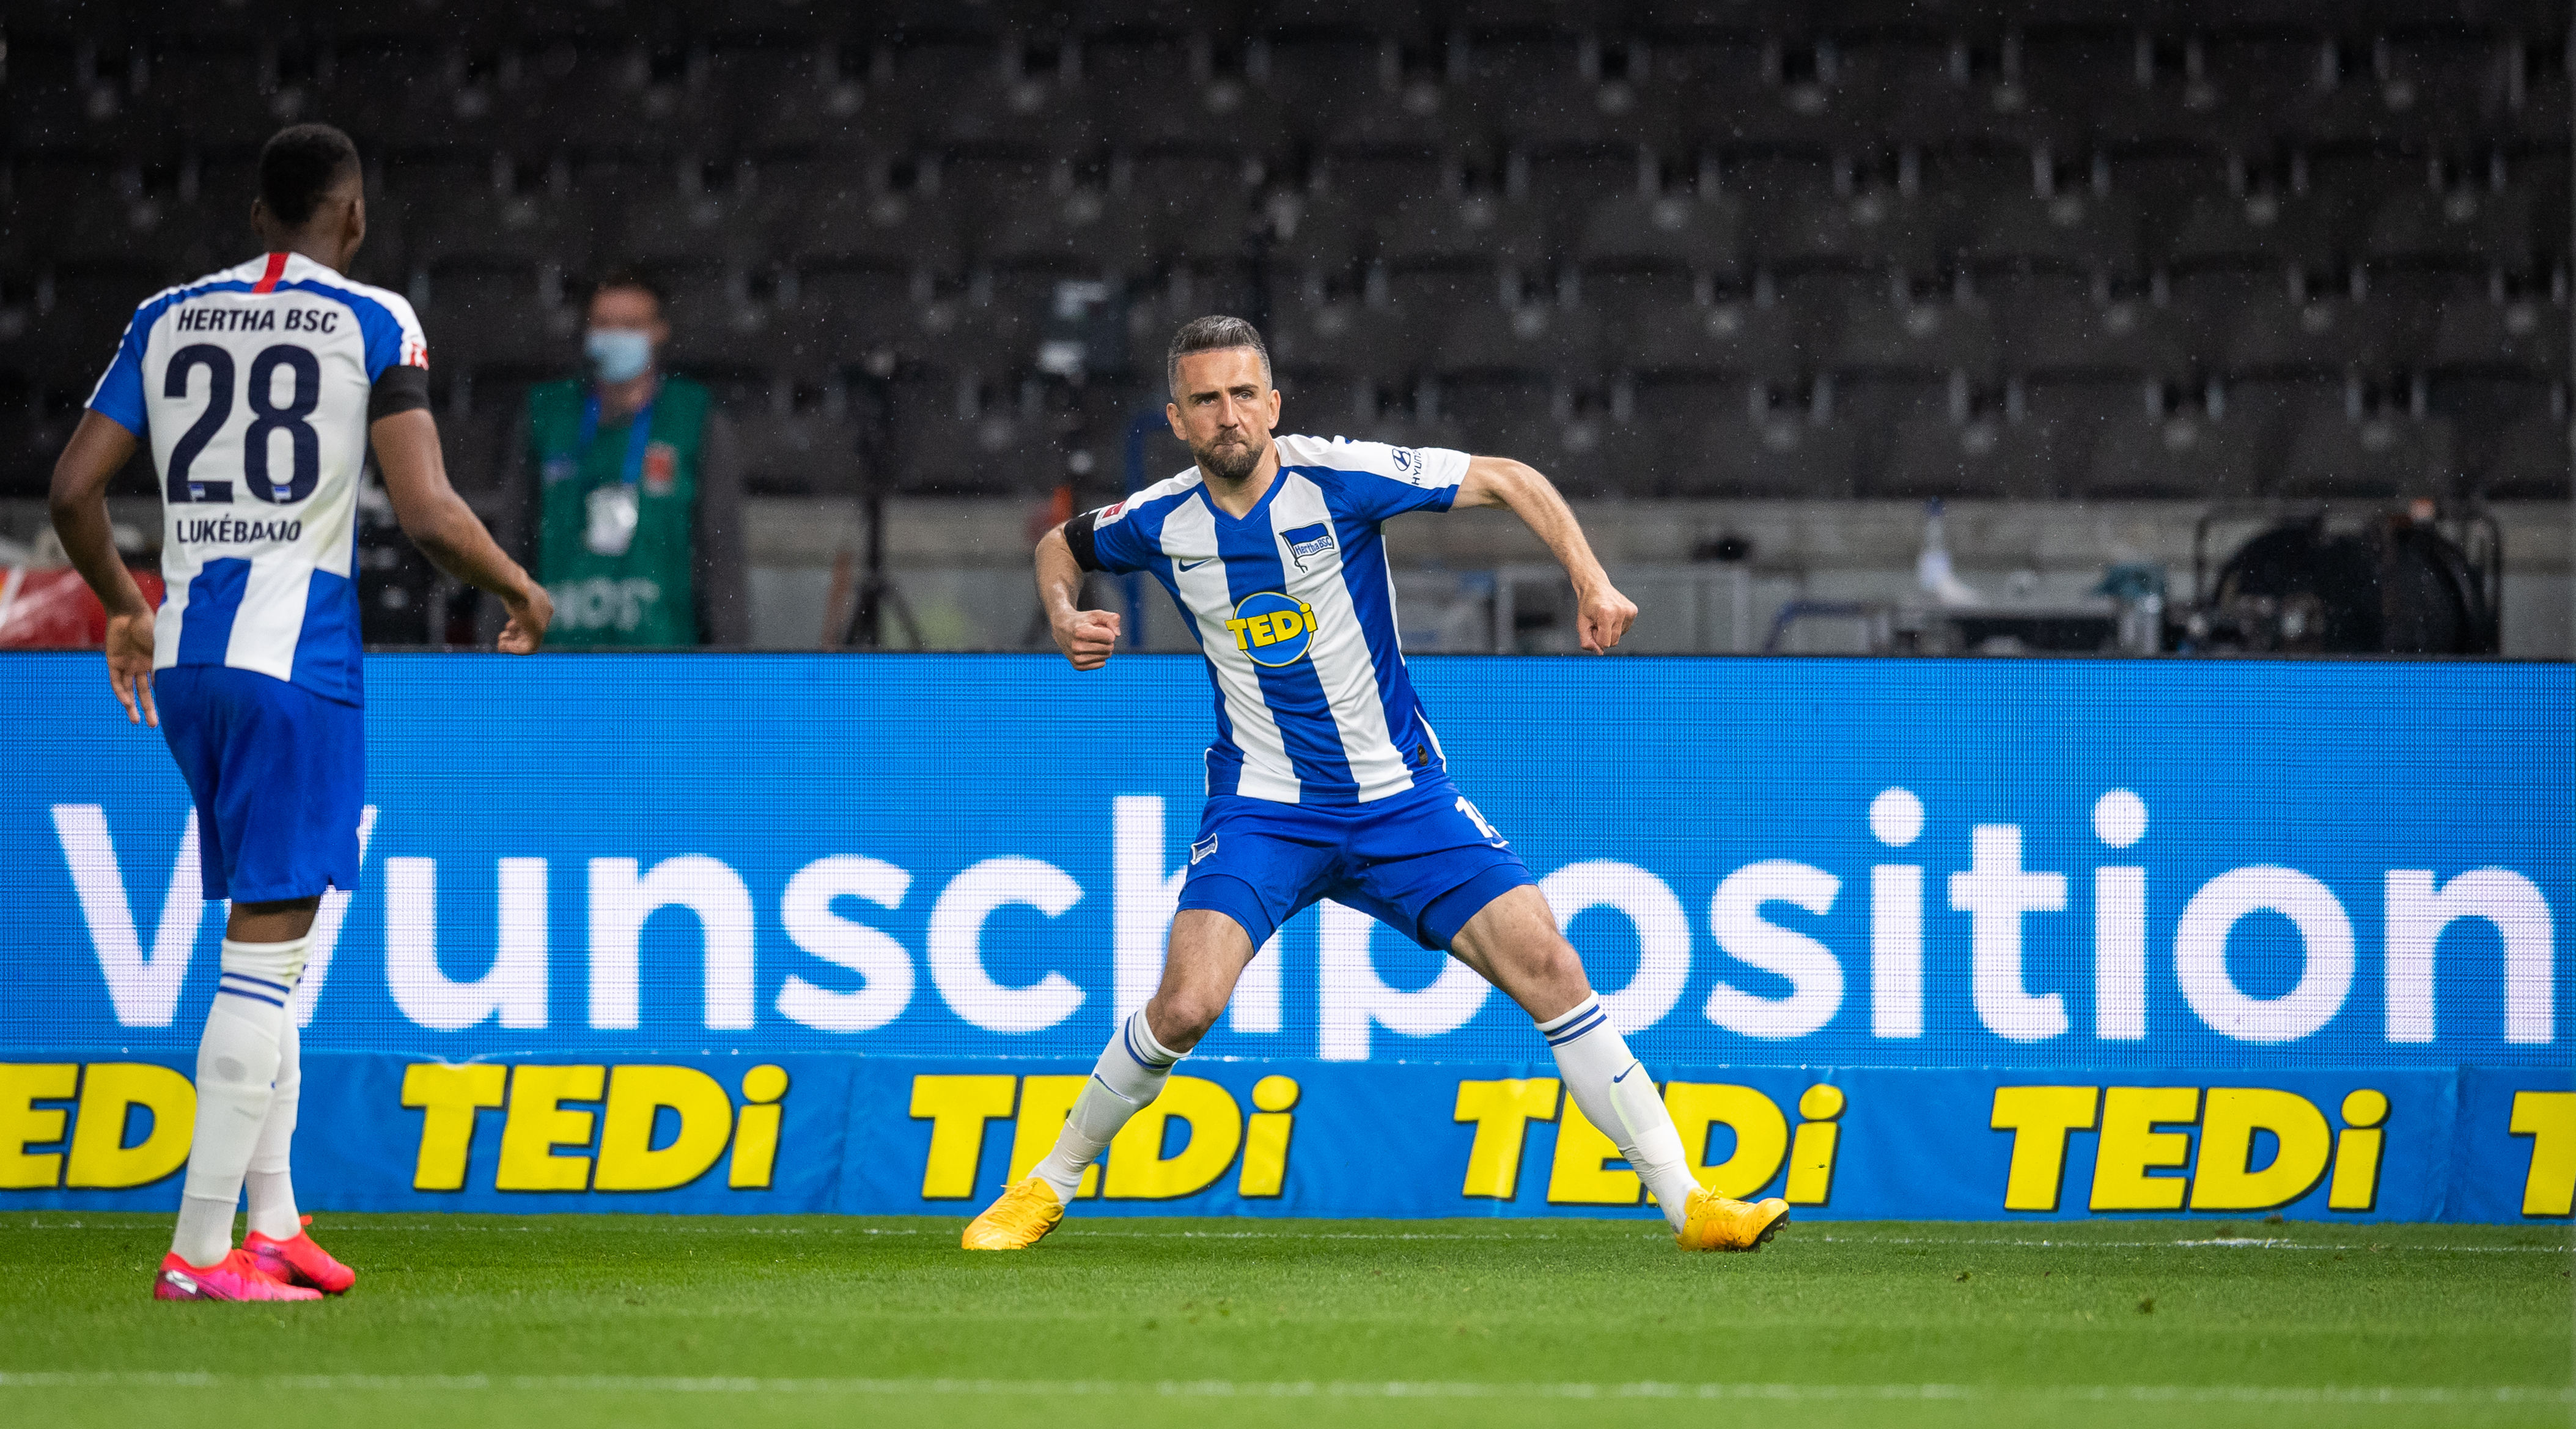 Emociones a flor de piel: Vedad Ibišević celebra su primer gol en el derbi.